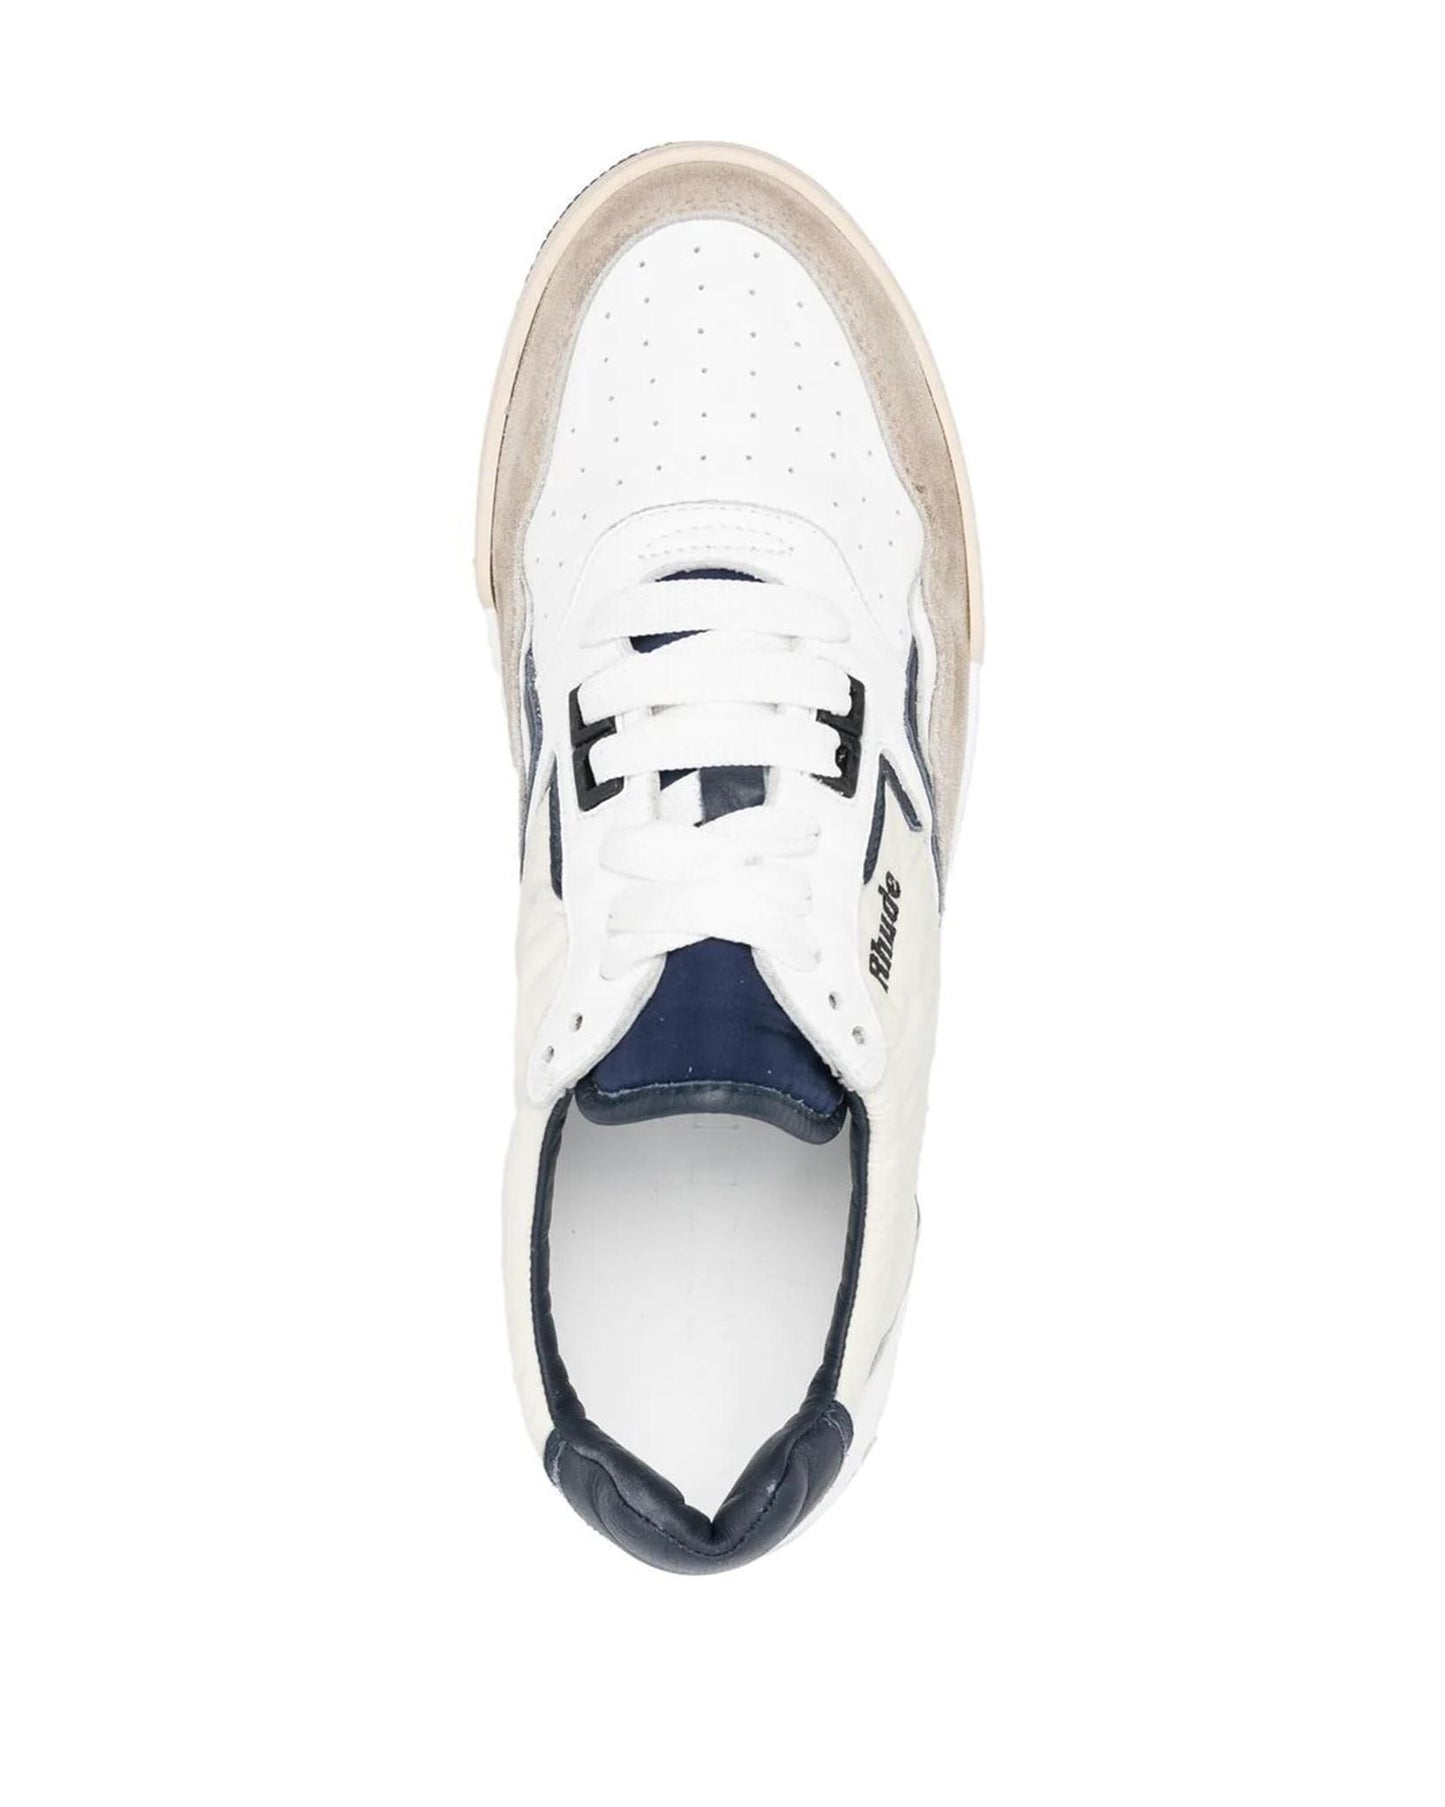 
                    
                      Rhude Racing Sneakers White/Navy
                    
                  